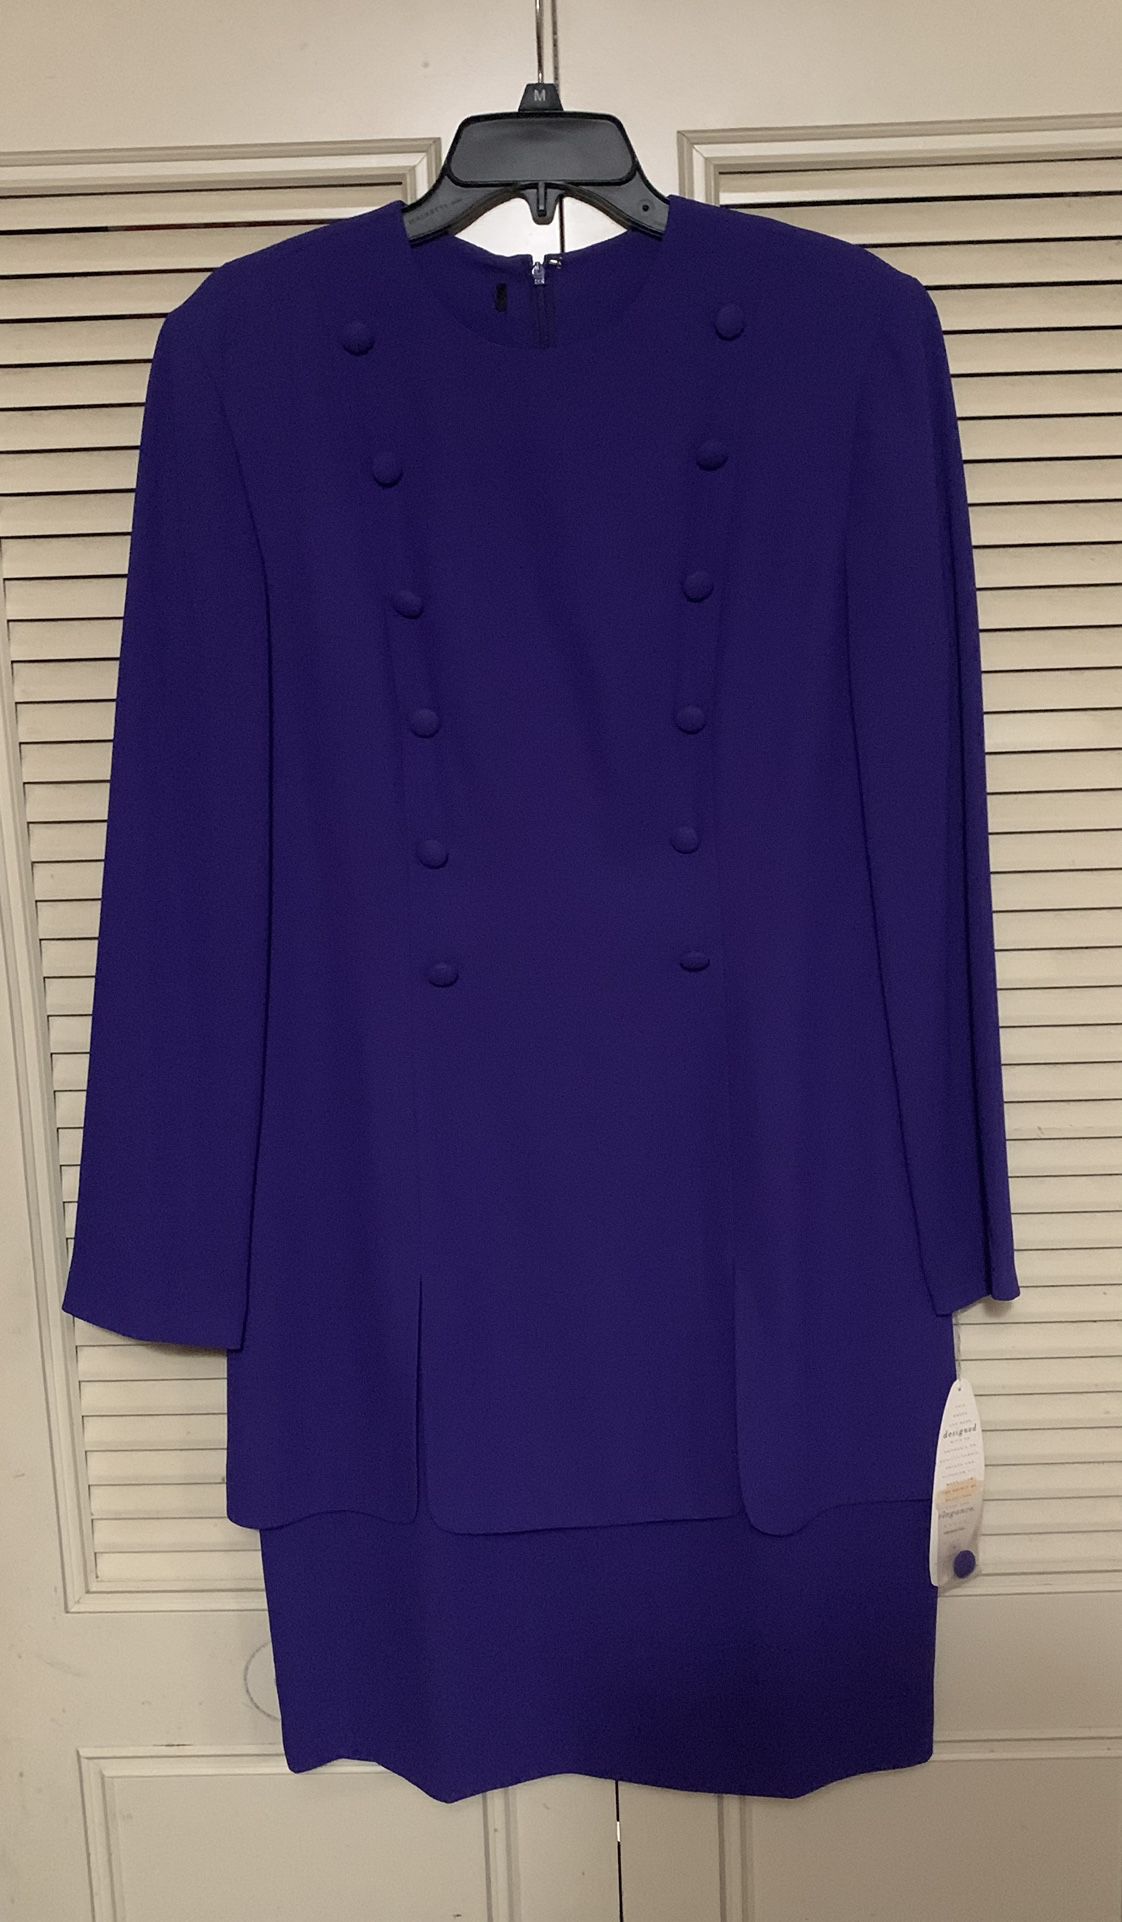 Marianne Dress Women Purple Size 12 New 